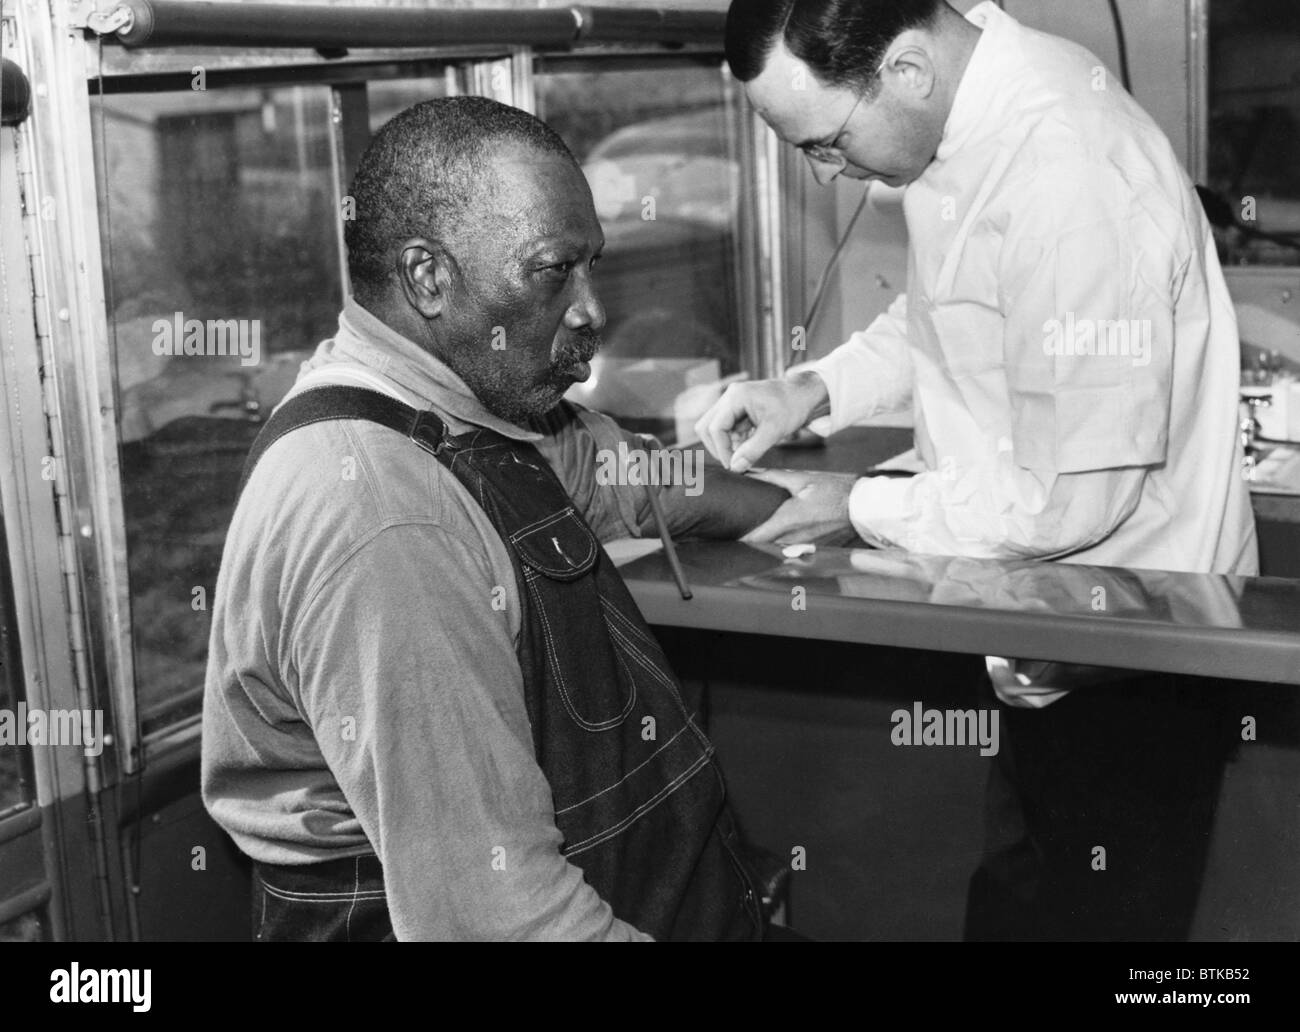 Afroamerikanische Patienten Behandlung für Syphilis in Public Health Service Klinik auf Rädern, Wadesboro, N.C. in den 1930er Jahren. Behandlungen für Syphilis war bis die Verfügbarkeit von Penicillin in den 1940er Jahren das potenziell giftige Arsen-haltige Medikament Salvarsan. Stockfoto